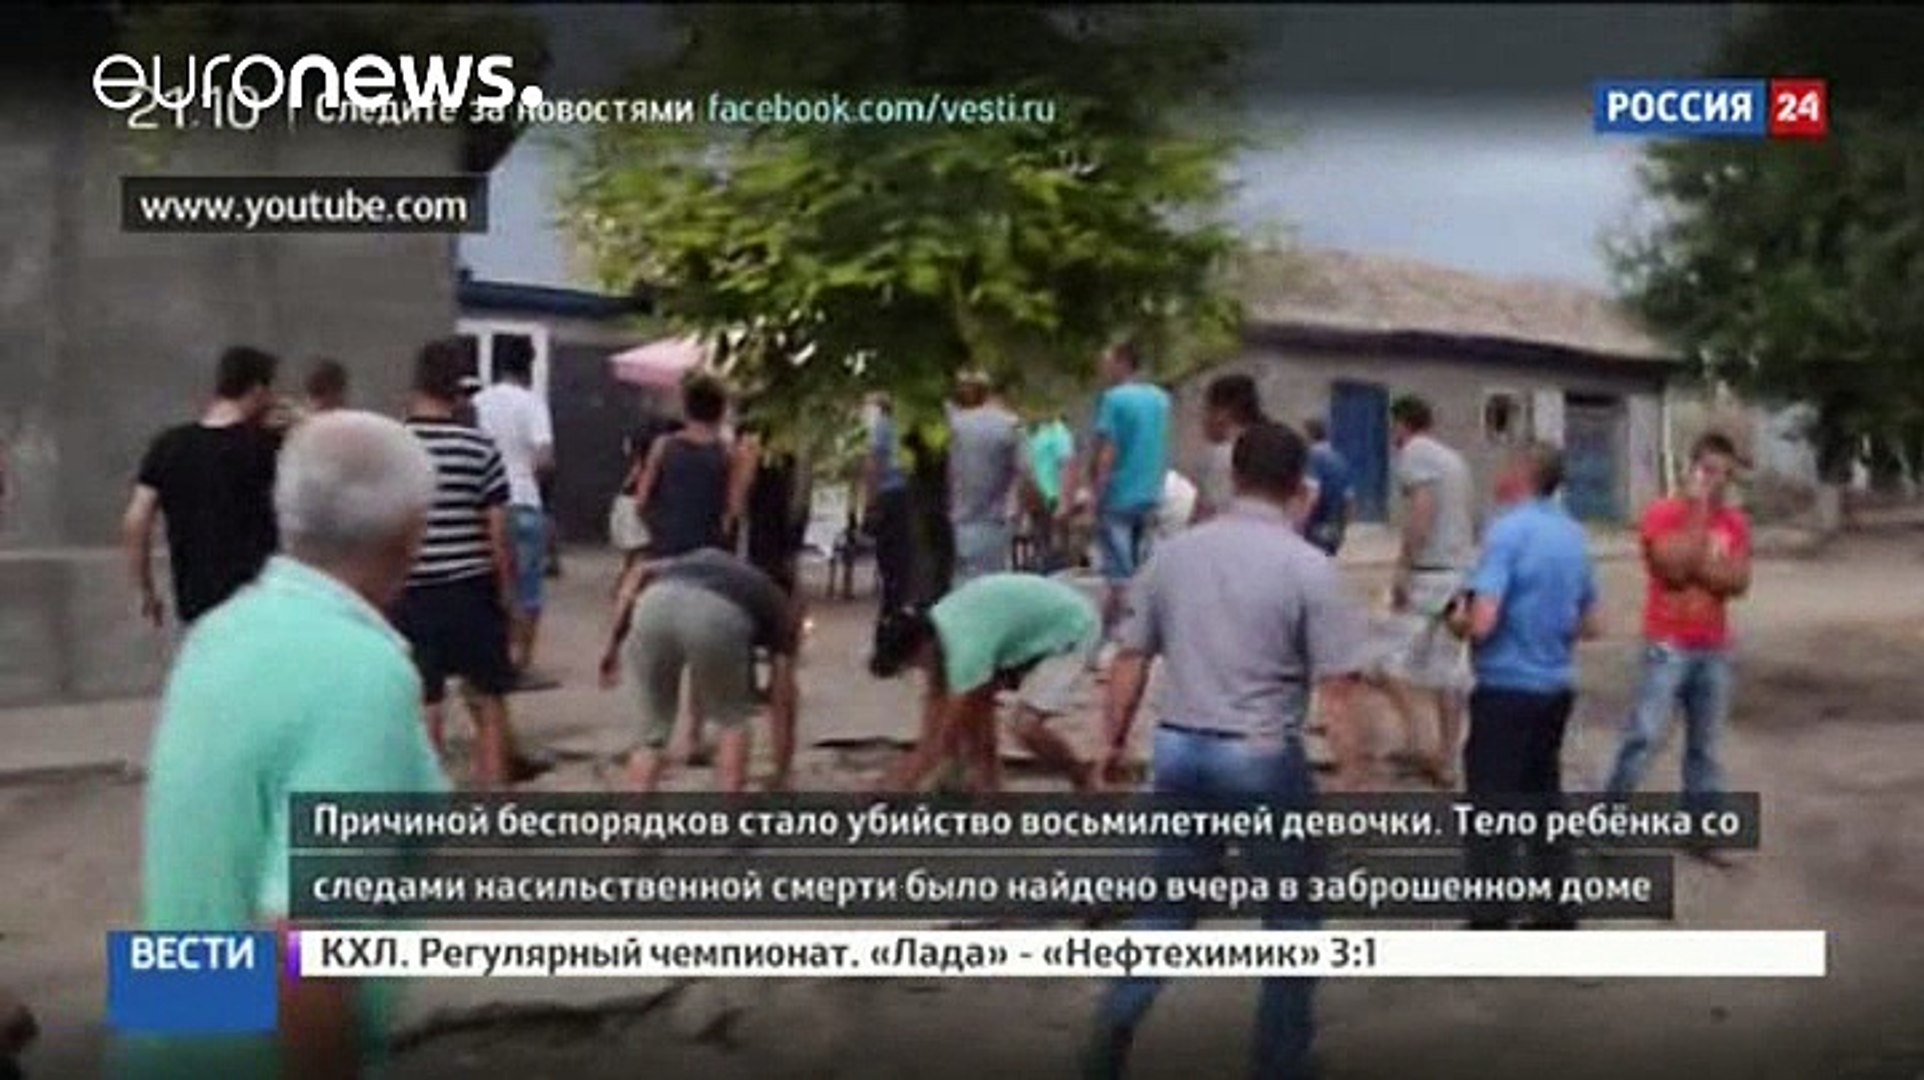 Ukrajna: roma pogrom egy szörnyű gyilkosság után - video Dailymotion